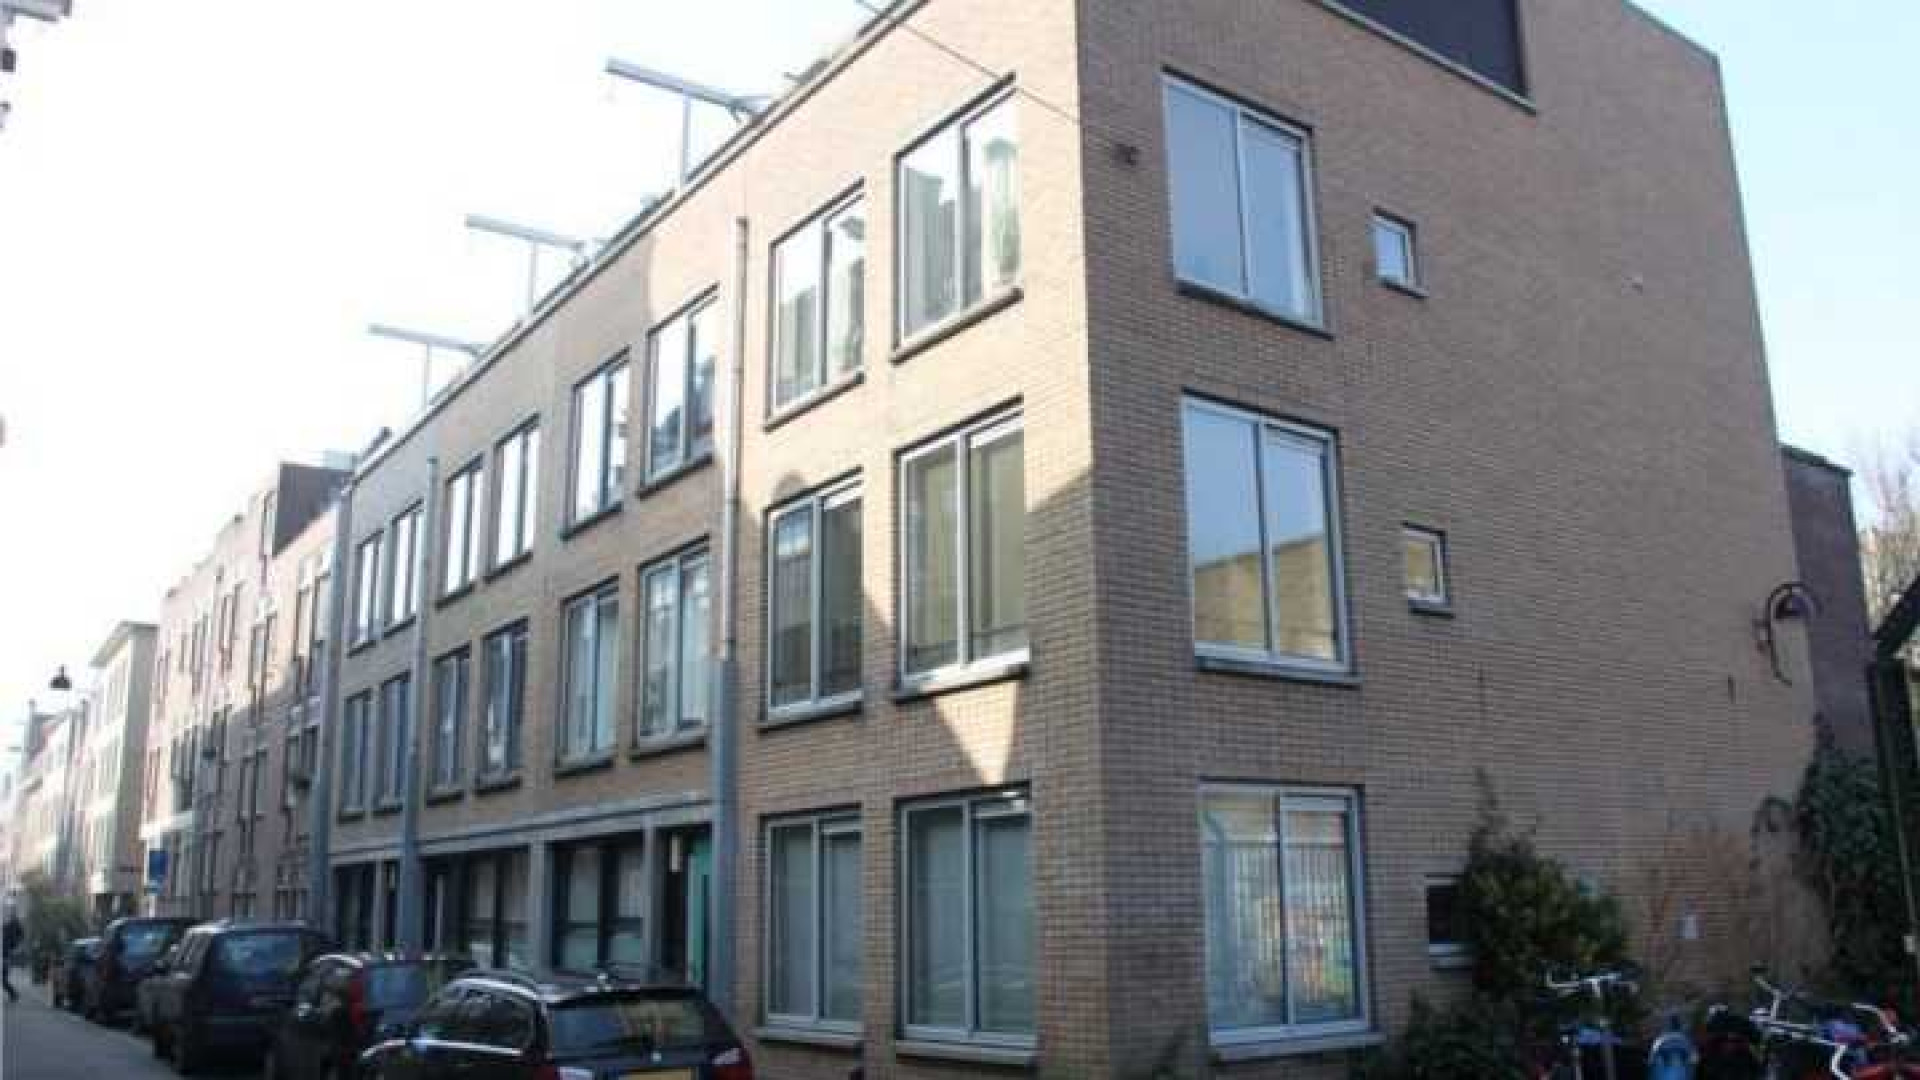 Frank Evenblij haalt zijn huis in de Amsterdamse Jordaan uit de verkoop. Zie foto's 2